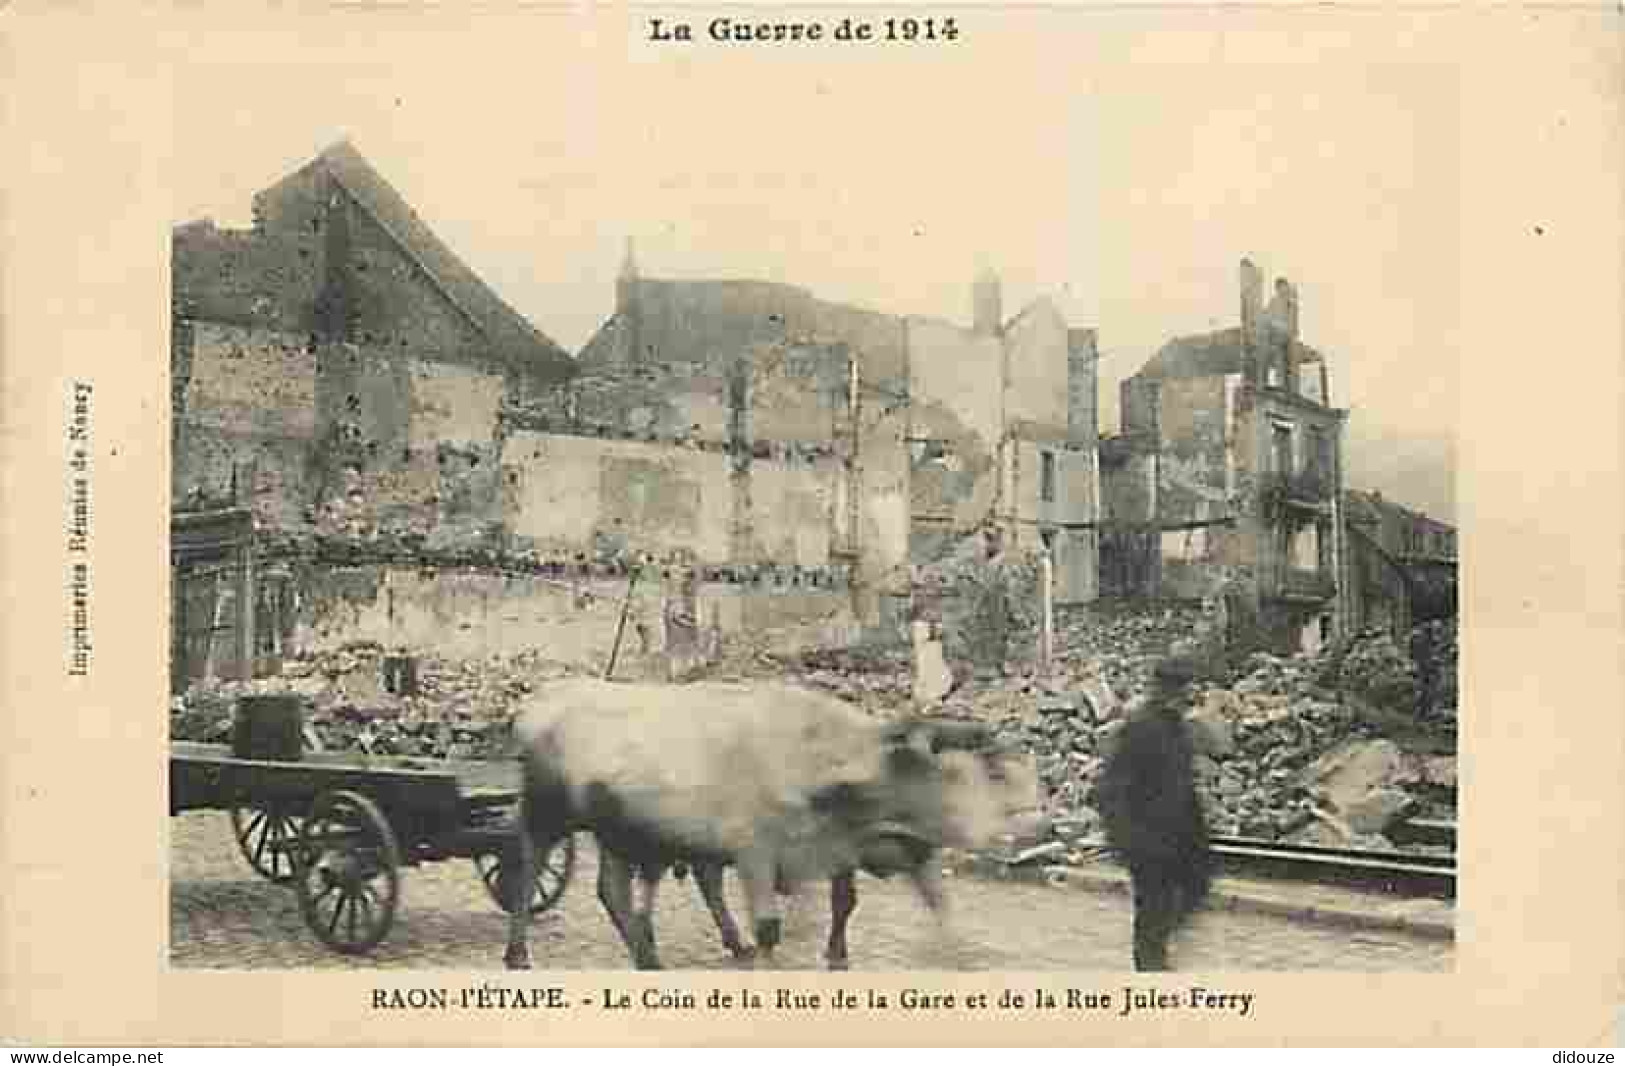 88 - Raon L'Etape - La Guerre De 1914 - Le Coin De La Rue De La Gare Et De La Rue Jules Ferry - Animée - Attelage De Boe - Raon L'Etape